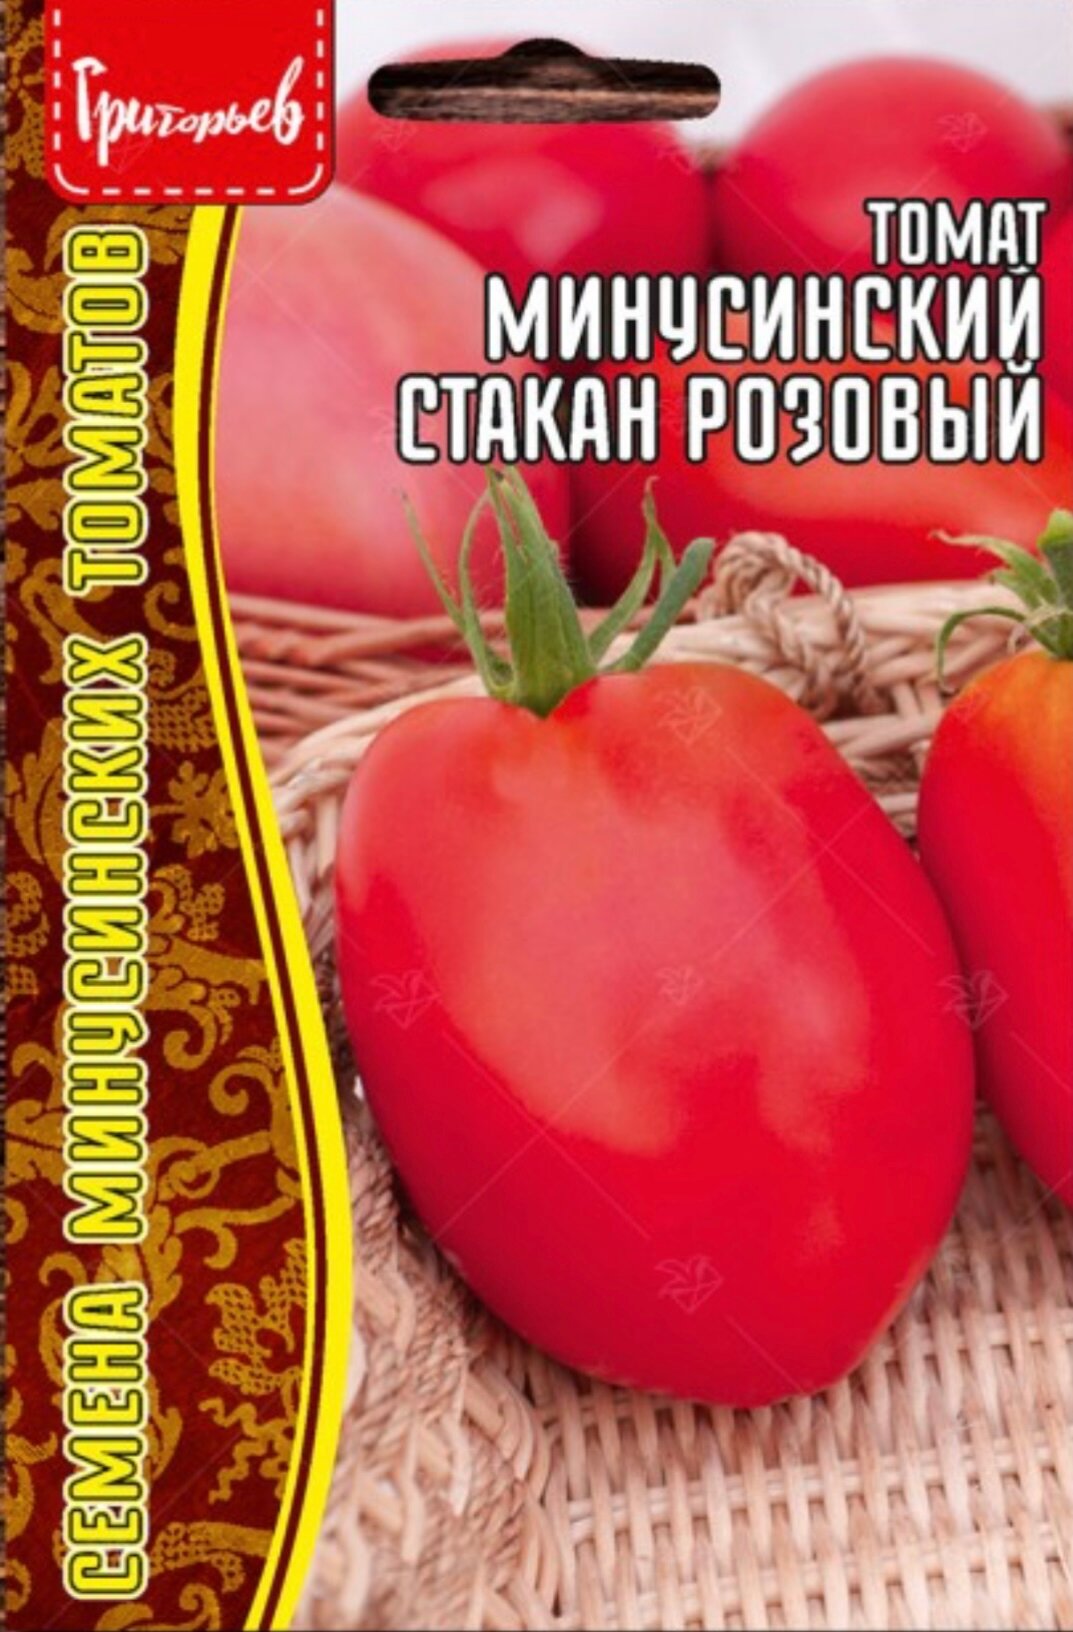 Семена Томата Минусинский Стакан Розовый (10 семян)